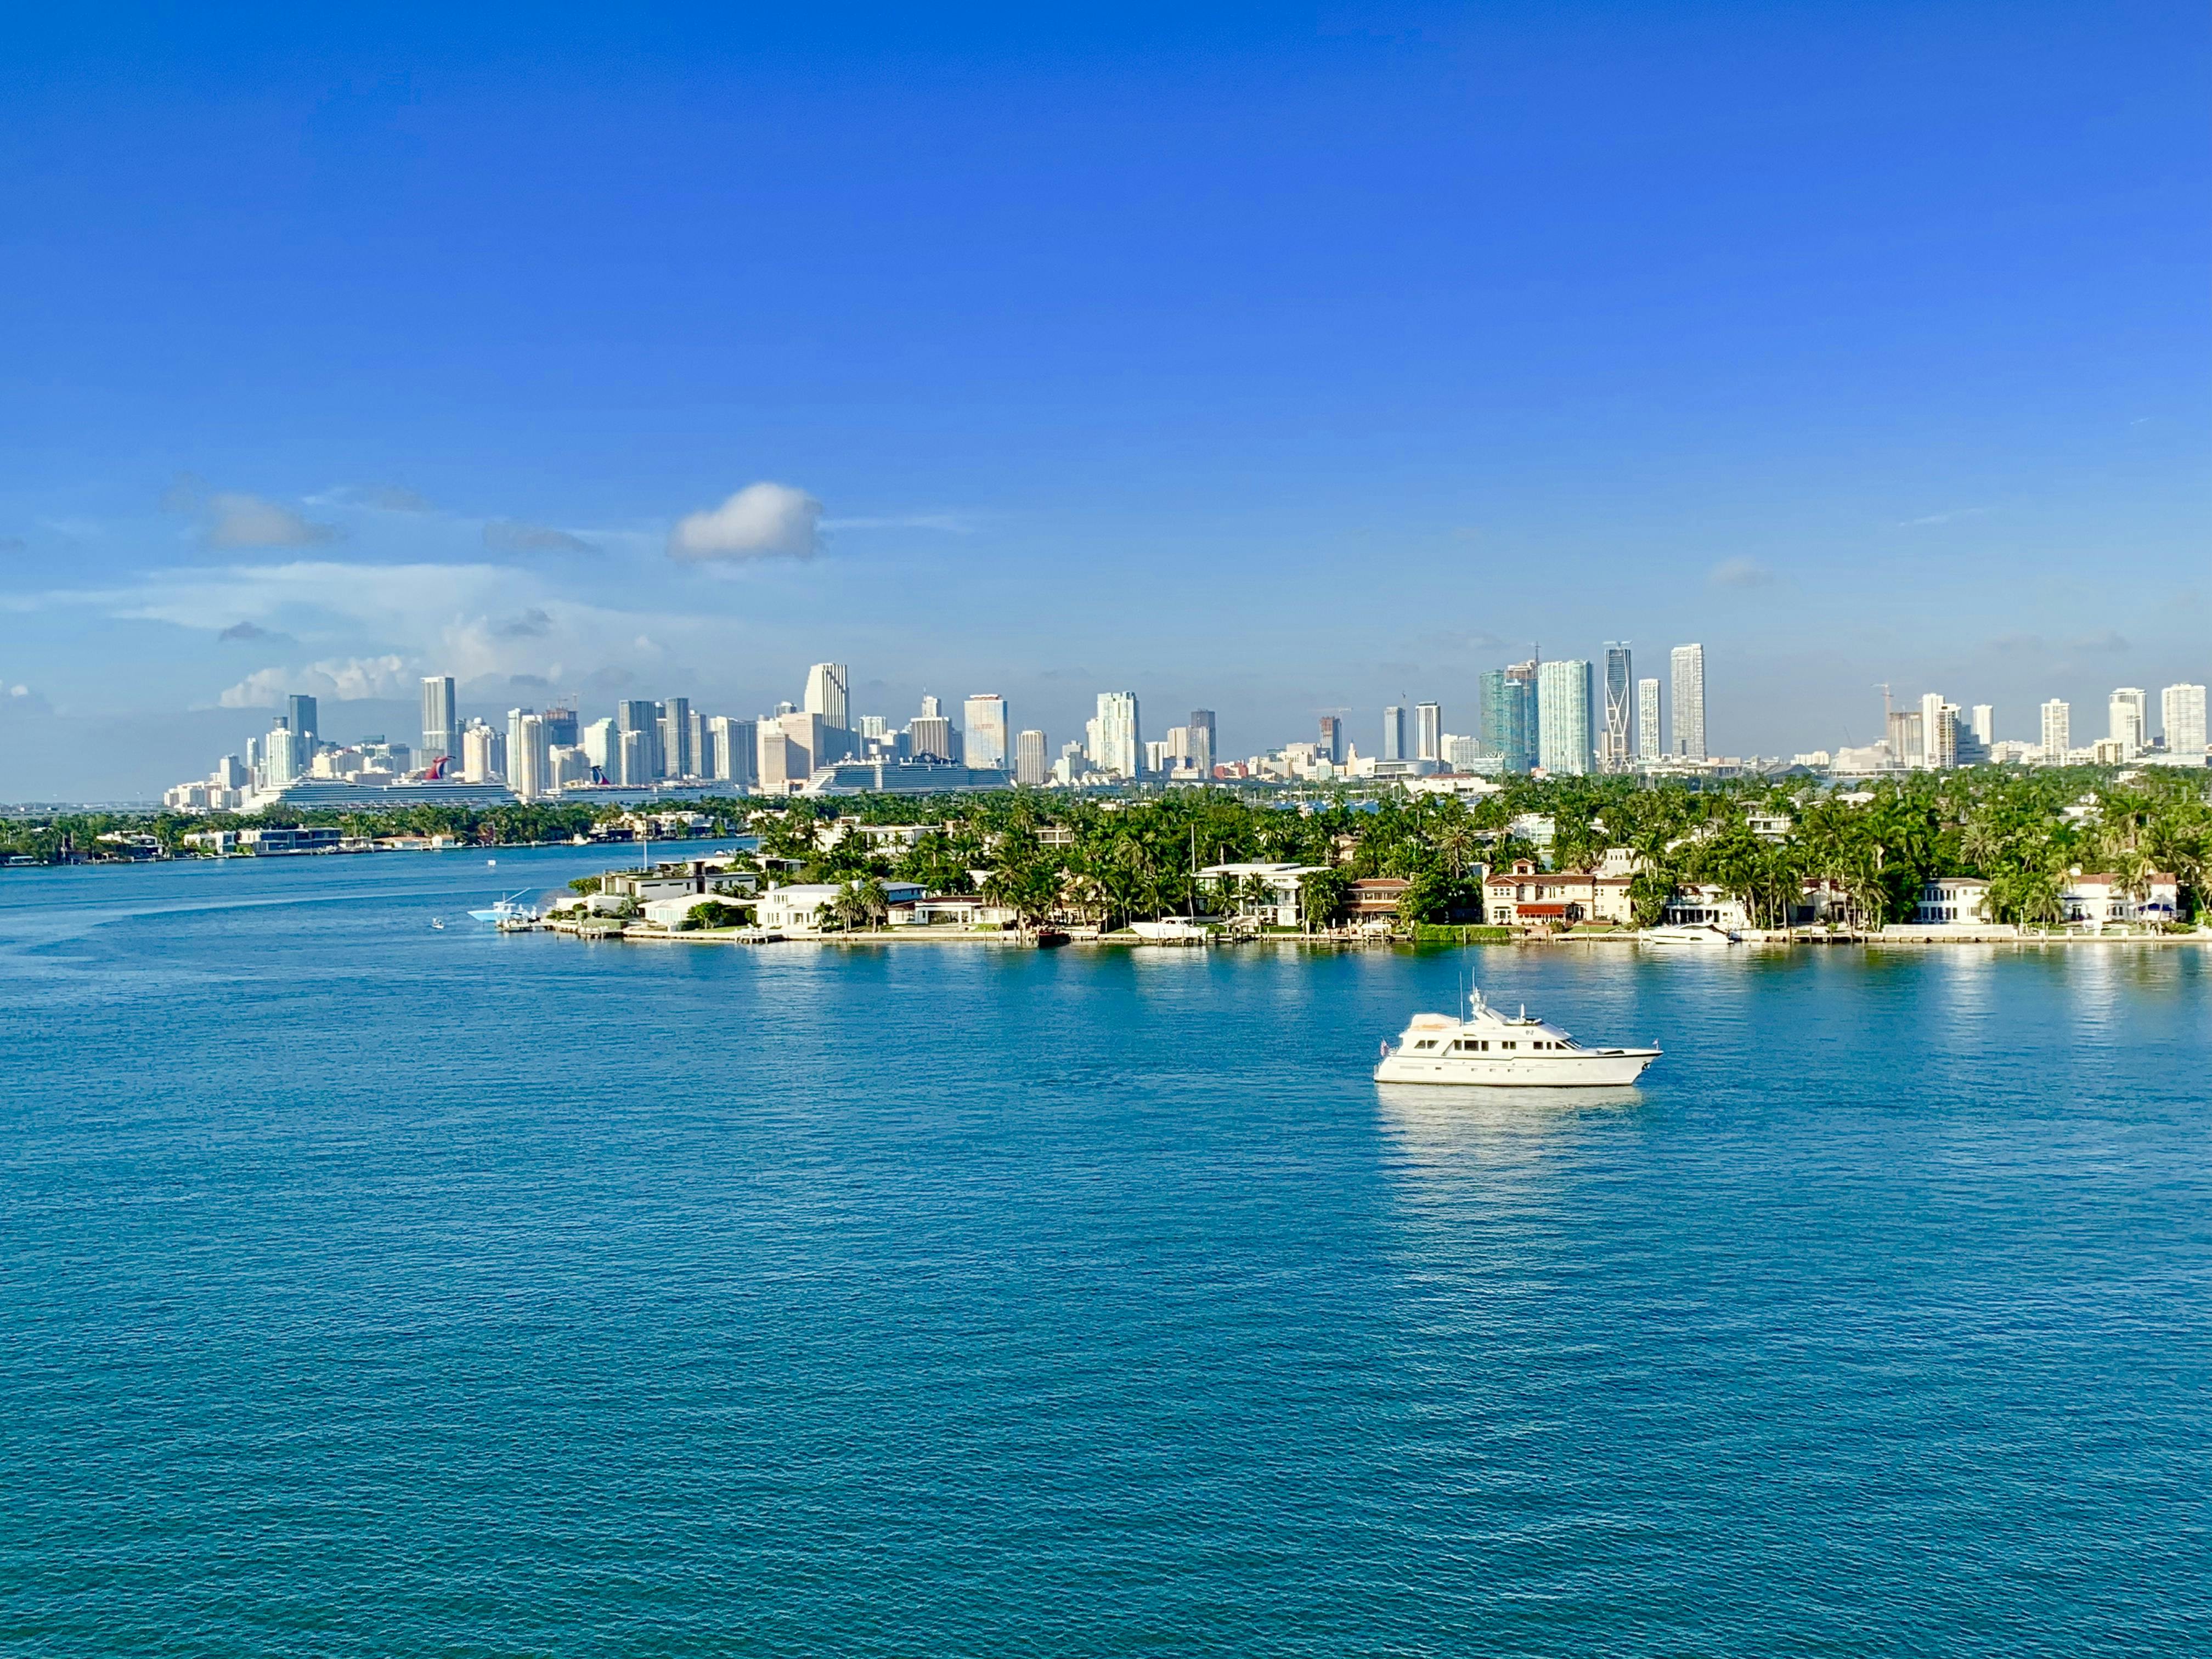 Stadtrundfahrt durch Miami mit Skyline-Kreuzfahrt in der Bucht